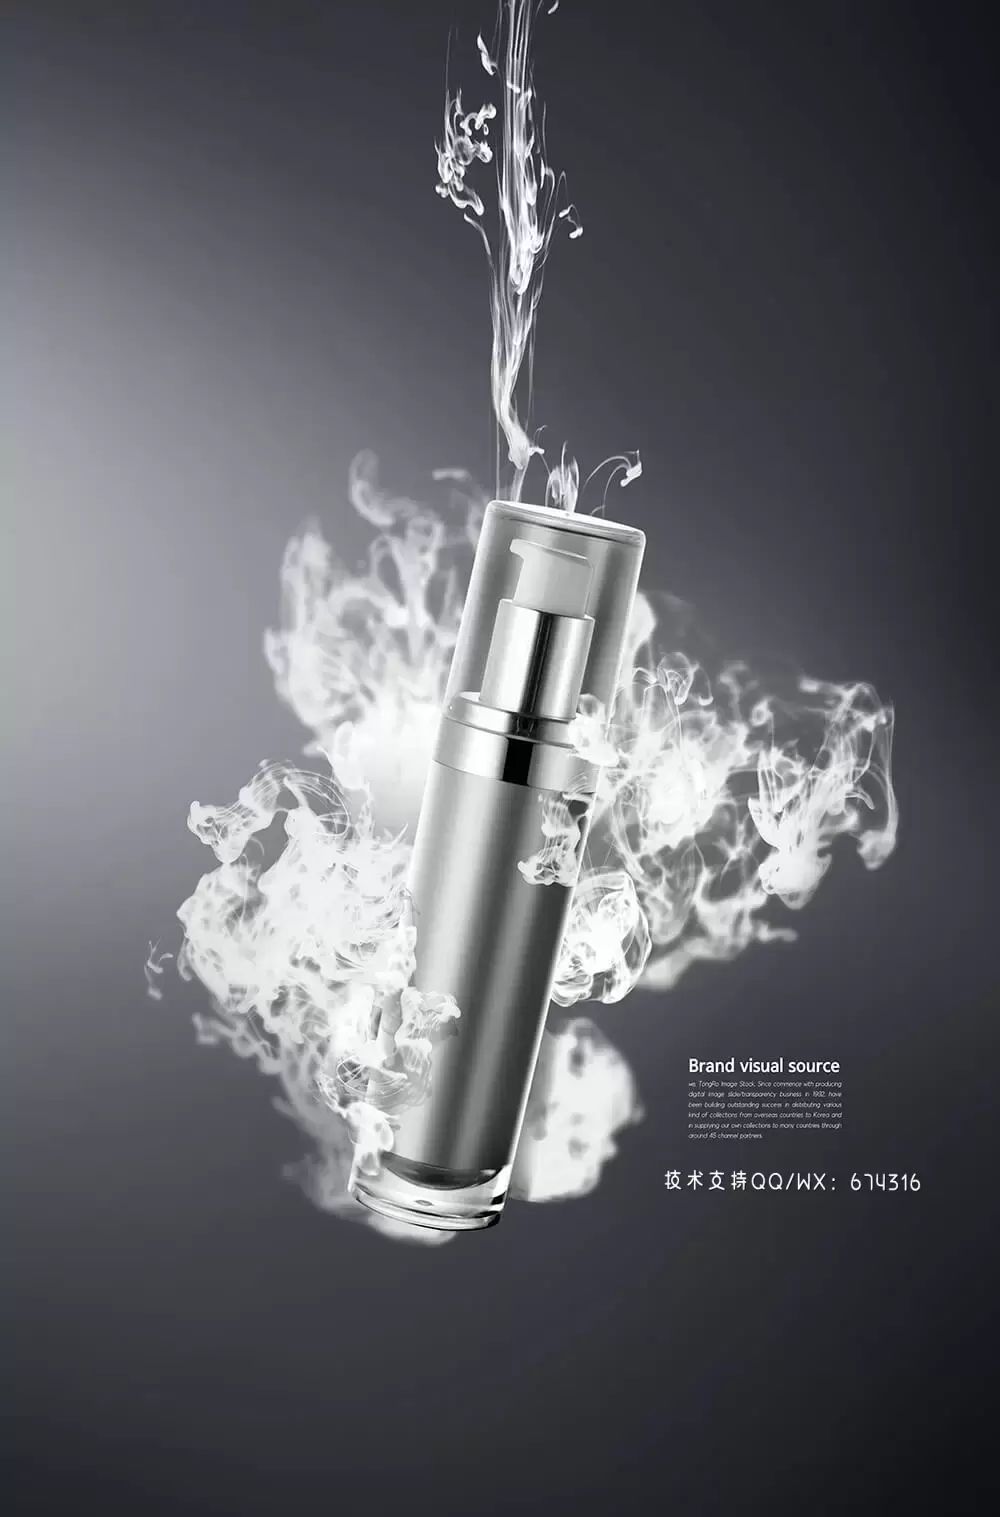 黑色背景烟雾化妆品品牌视觉海报设计模板 (psd)插图